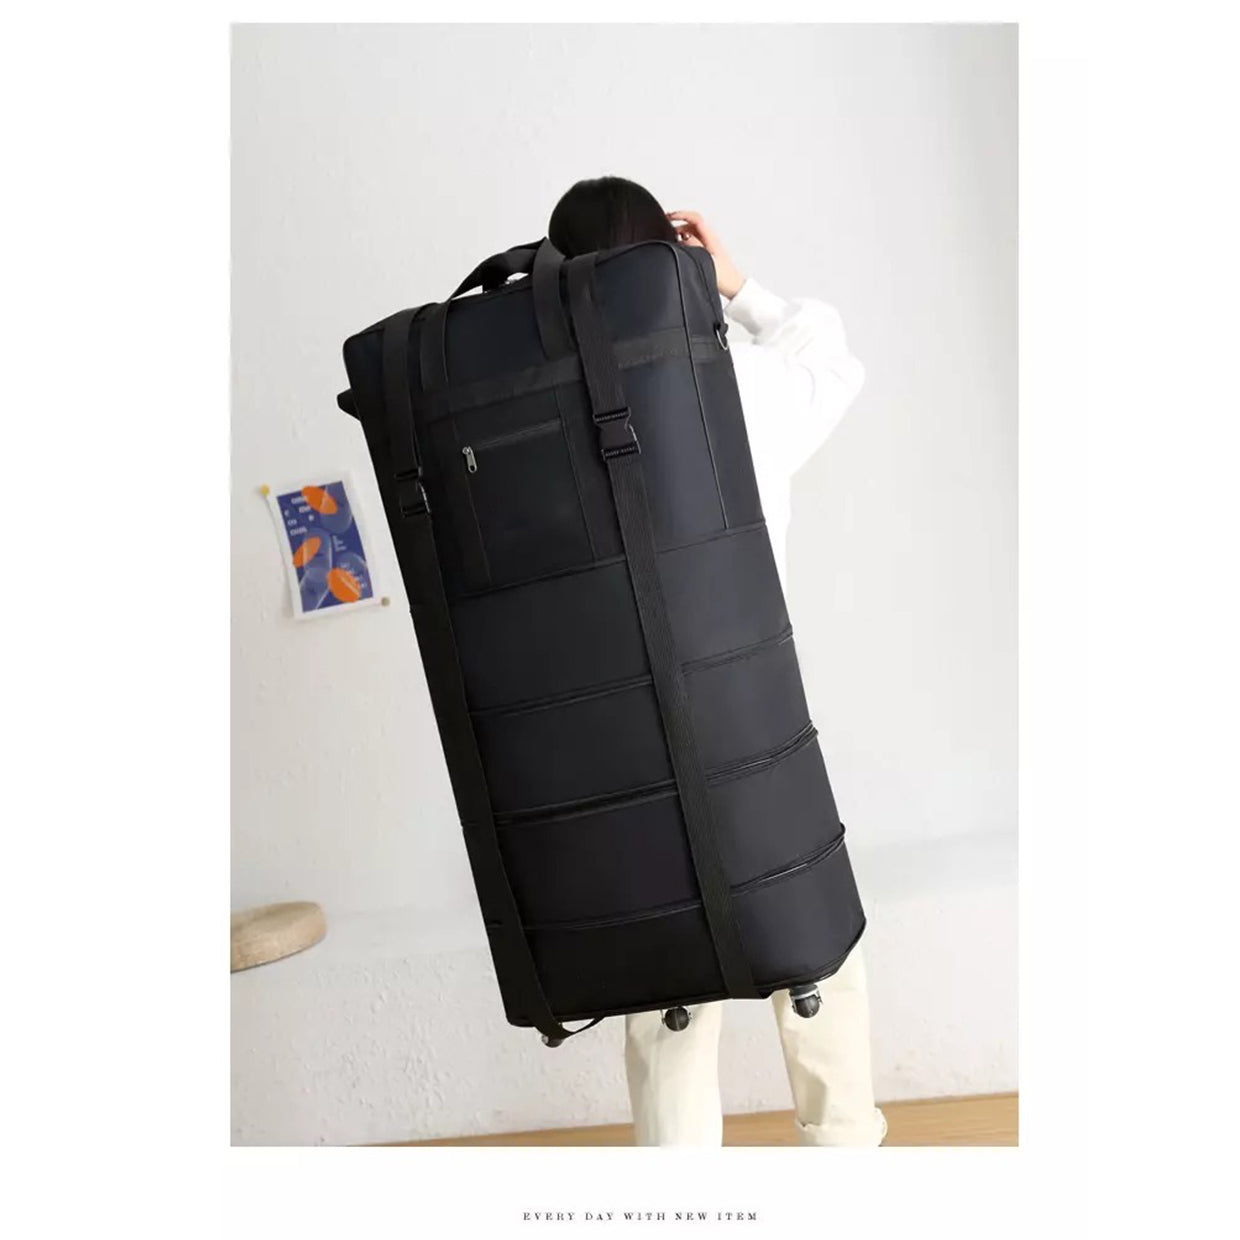 Trolley 5 Wheel Storage Foldable  Luggage Bag |  Foldable Wheel Storage Bag - XXDUOF5WBK